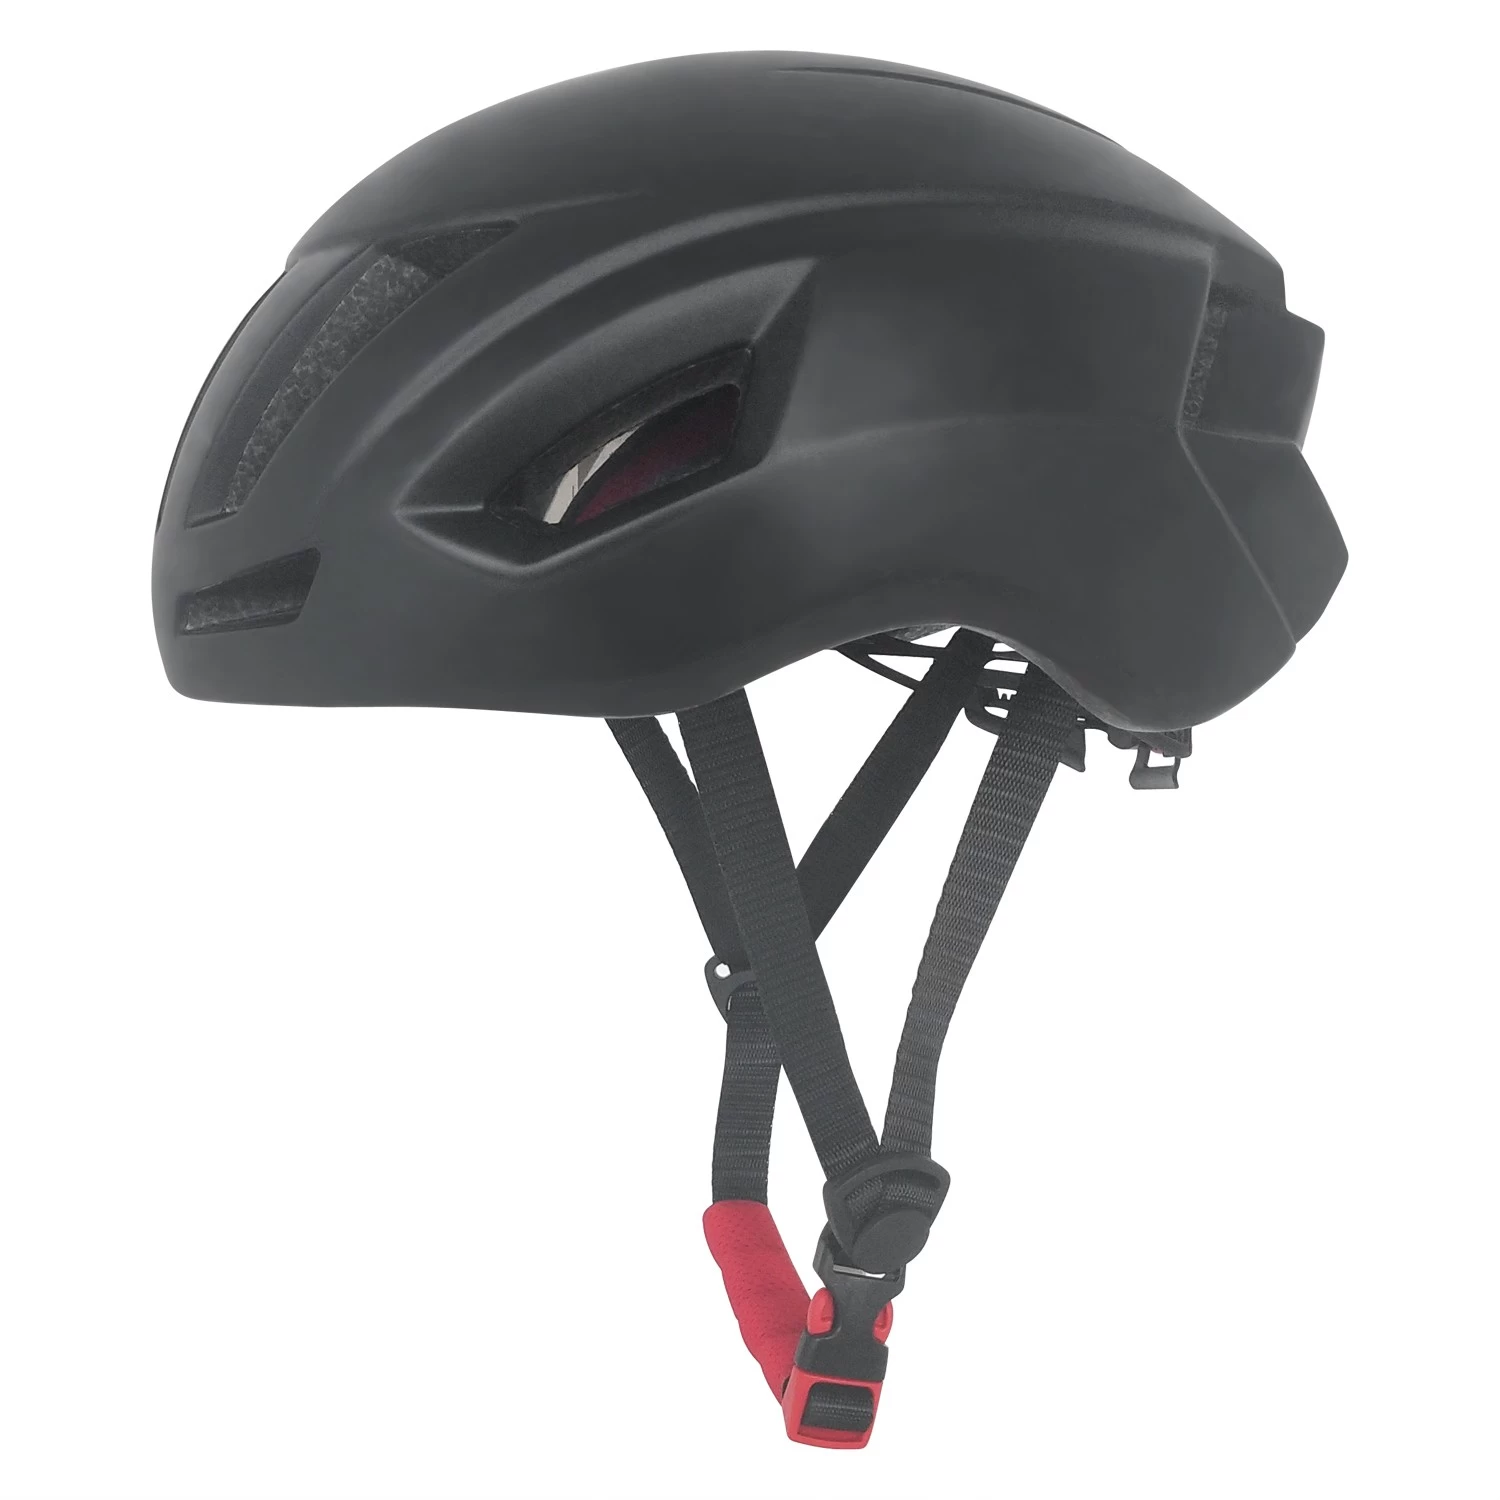 Čína Ultralight cyklistická helma AU-BH20 s certifikátem CE výrobce